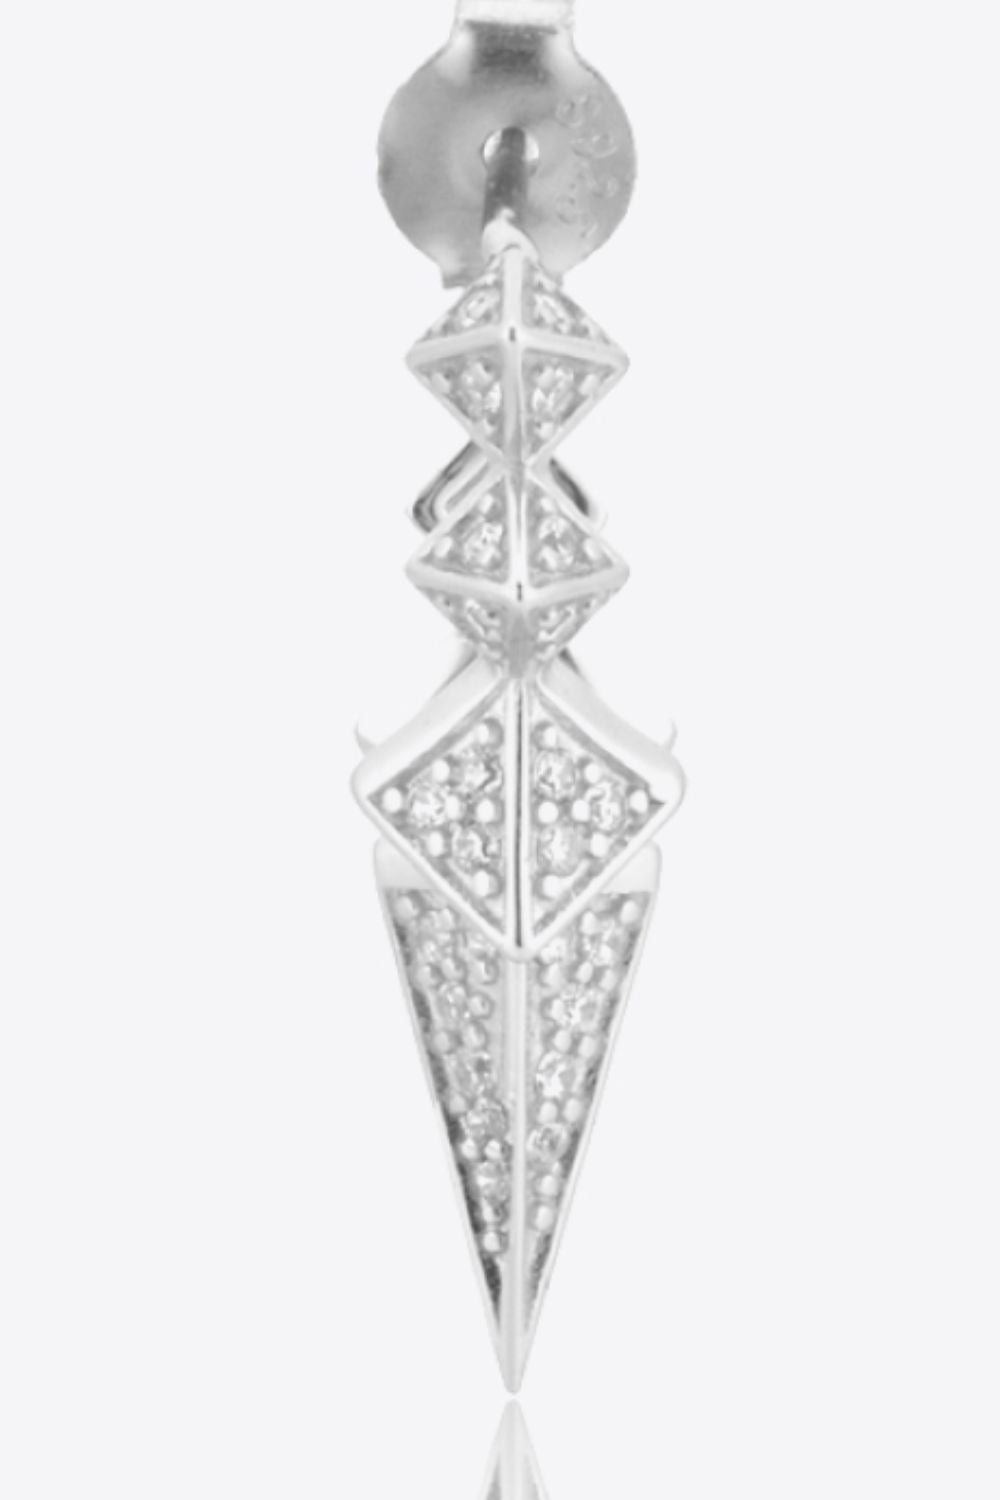 Geometric Zircon Decor 925 Sterling Silver Earrings - Guy Christopher